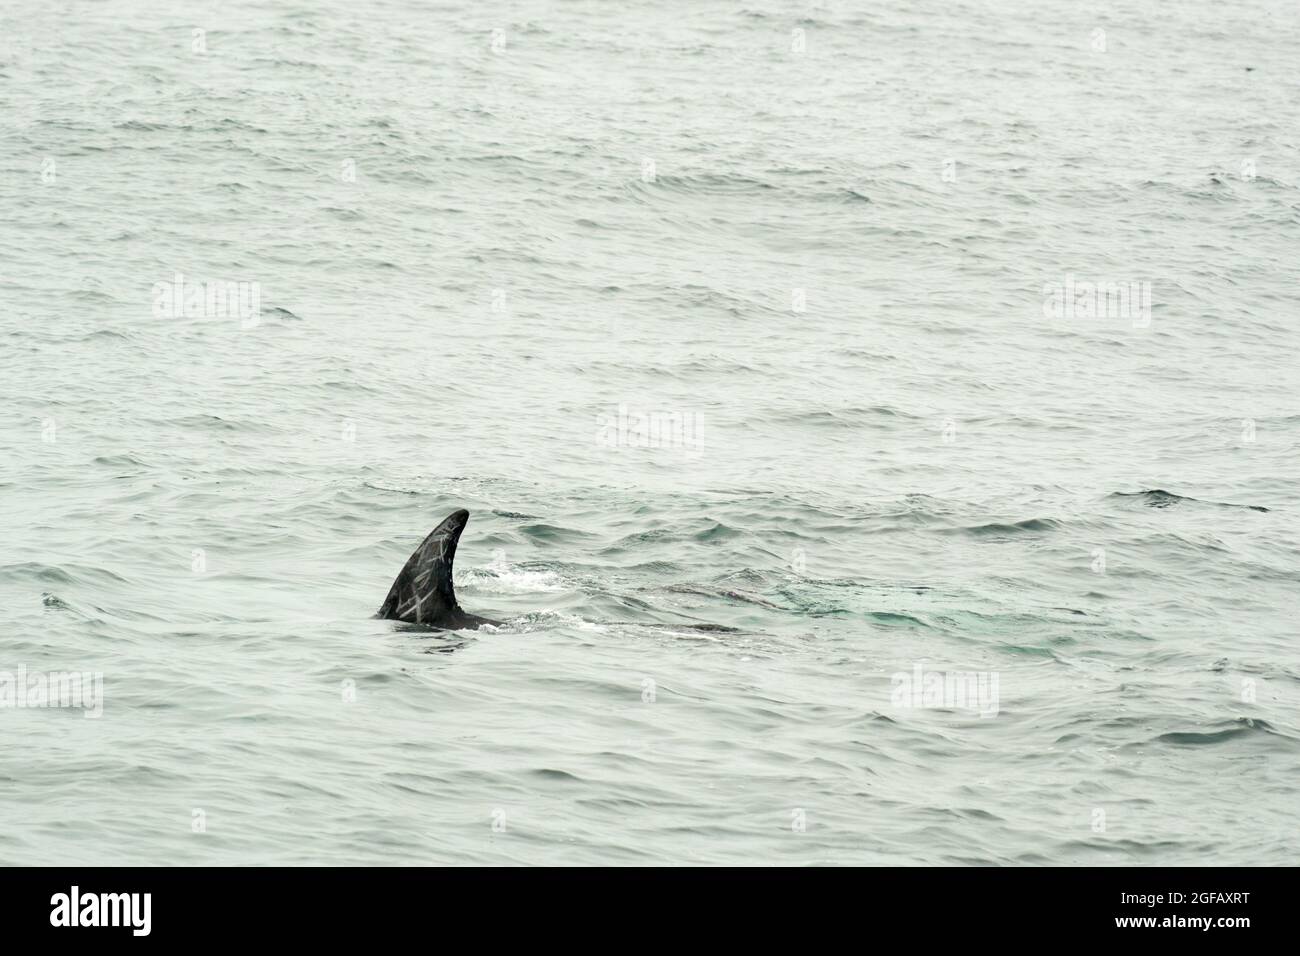 Die Rückenflosse des wilden Risso's Dolphin schwimmt in Monterey Bay, Kalifornien, und zeigt markante weiße Schreckenbildung Stockfoto